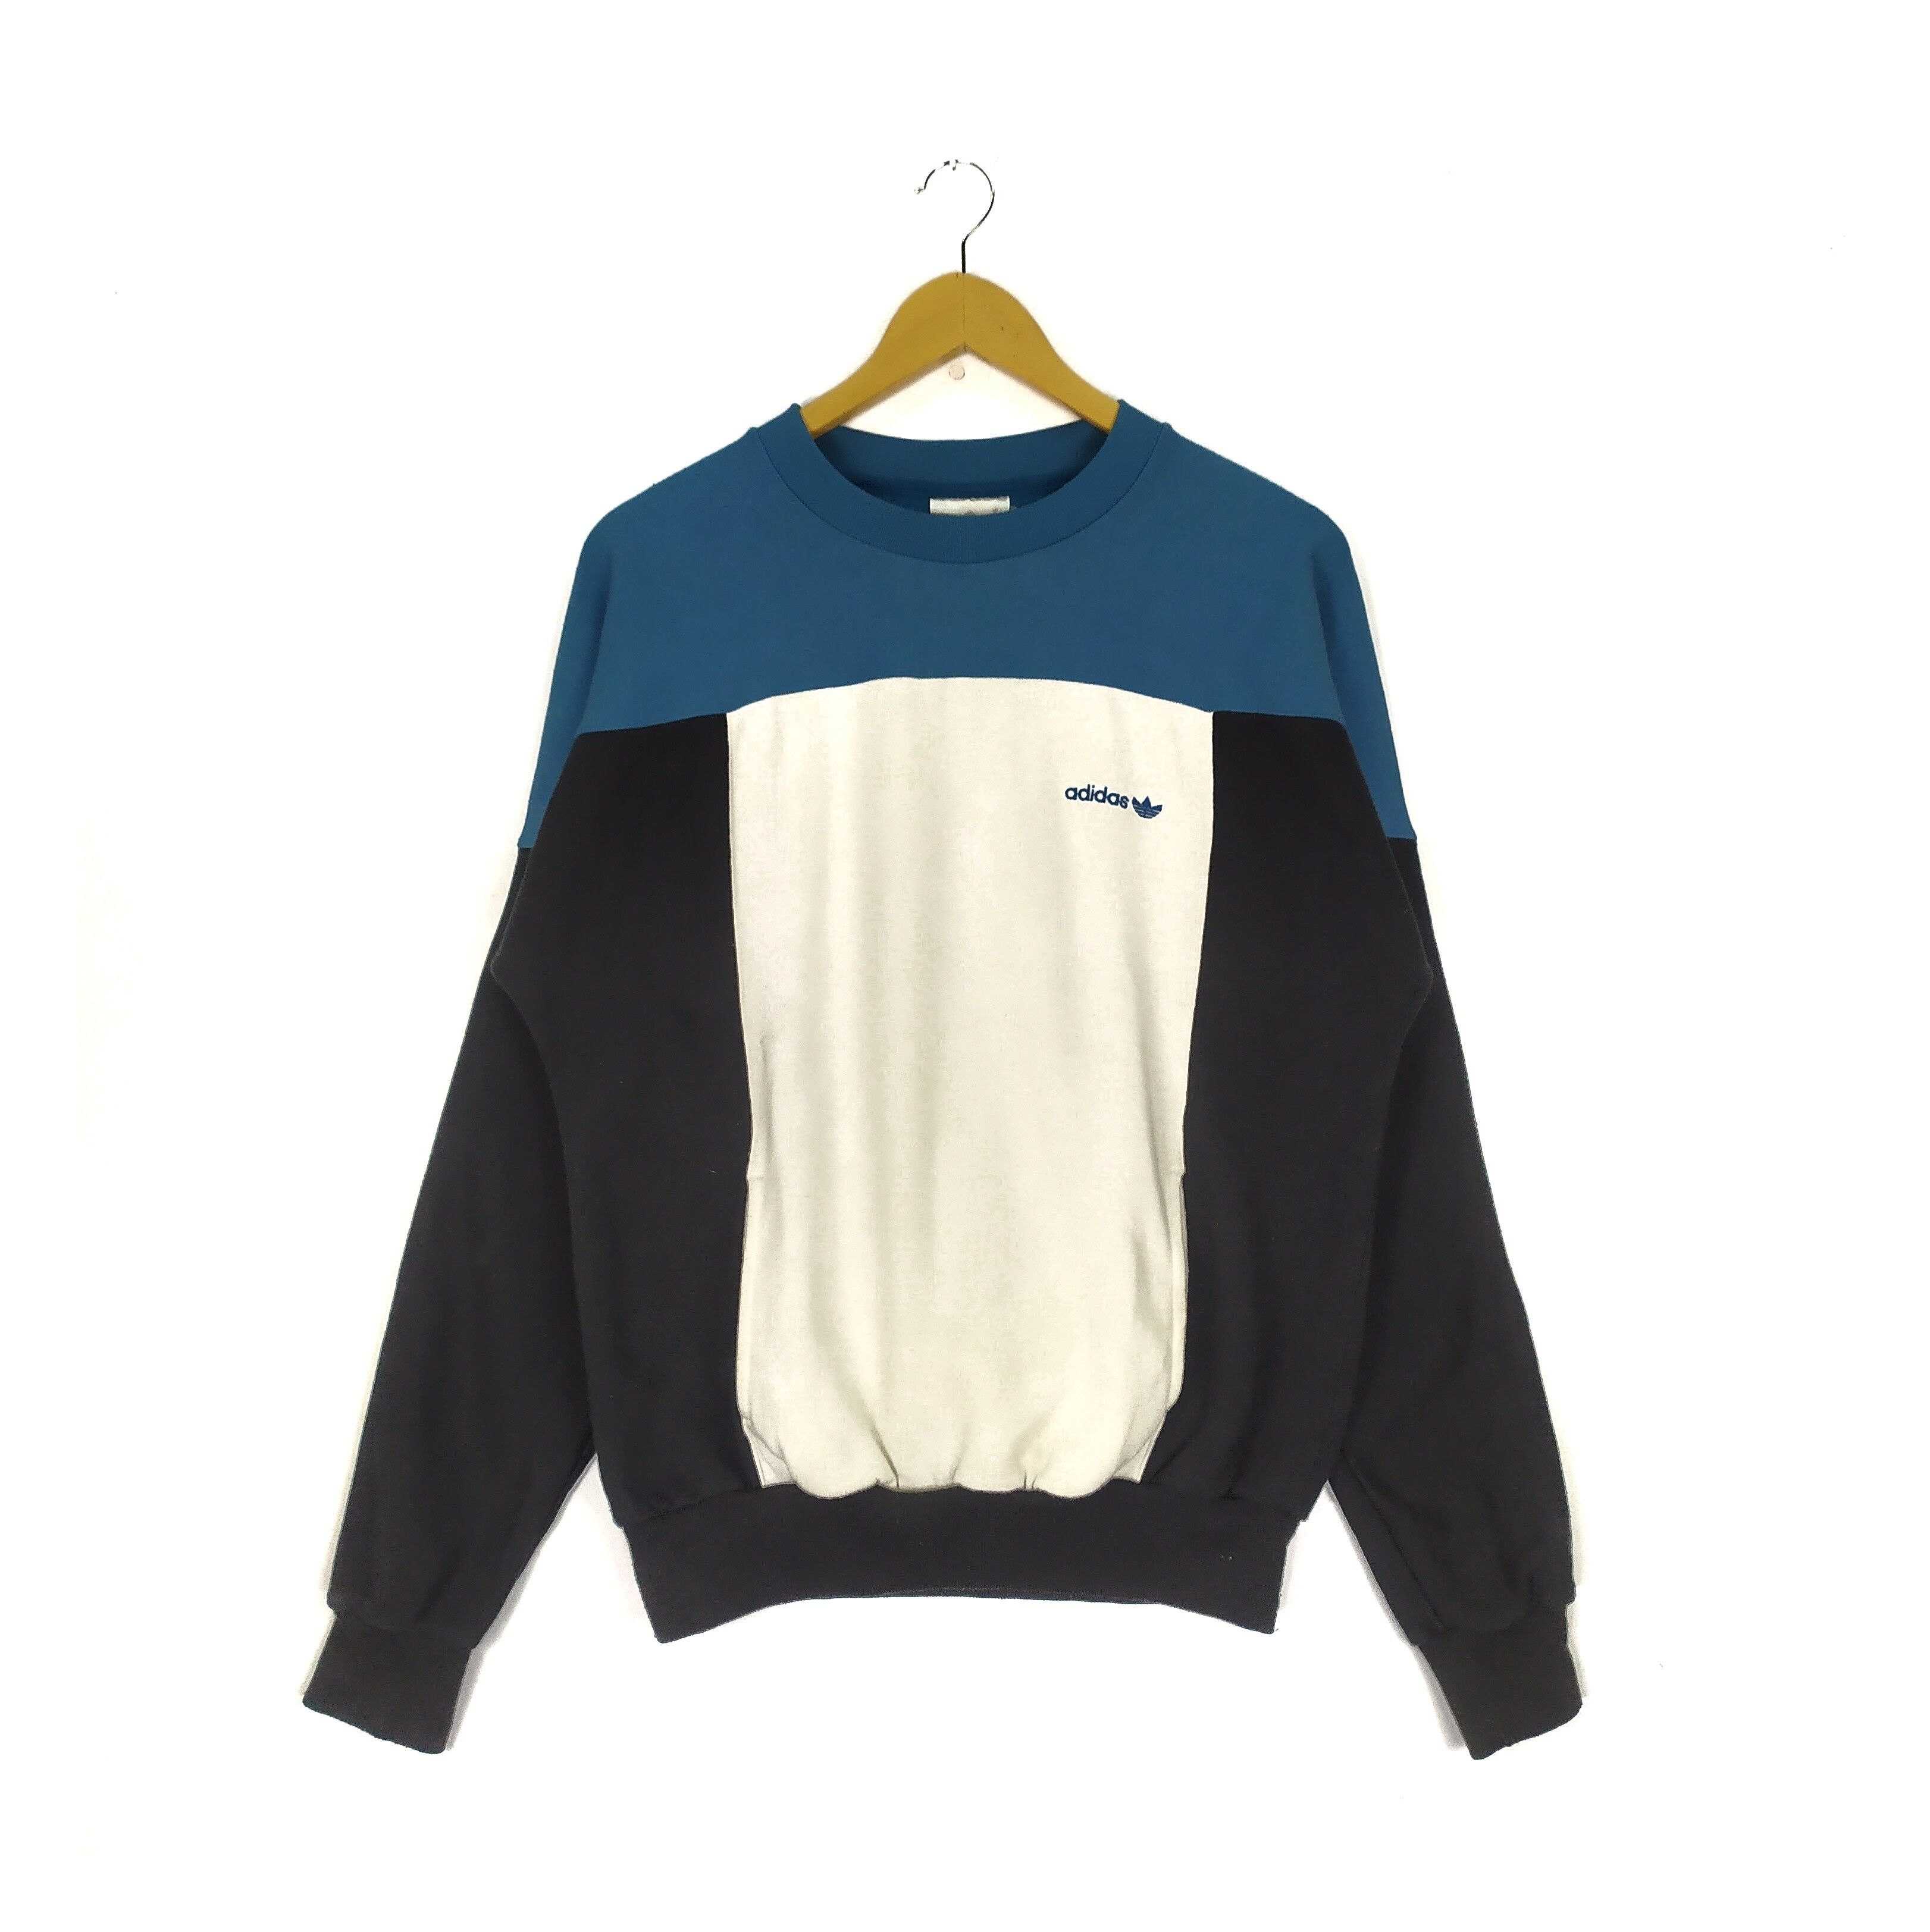 Adidas Embroidered Vintage 90s Crewneck Sweatshirt - 1